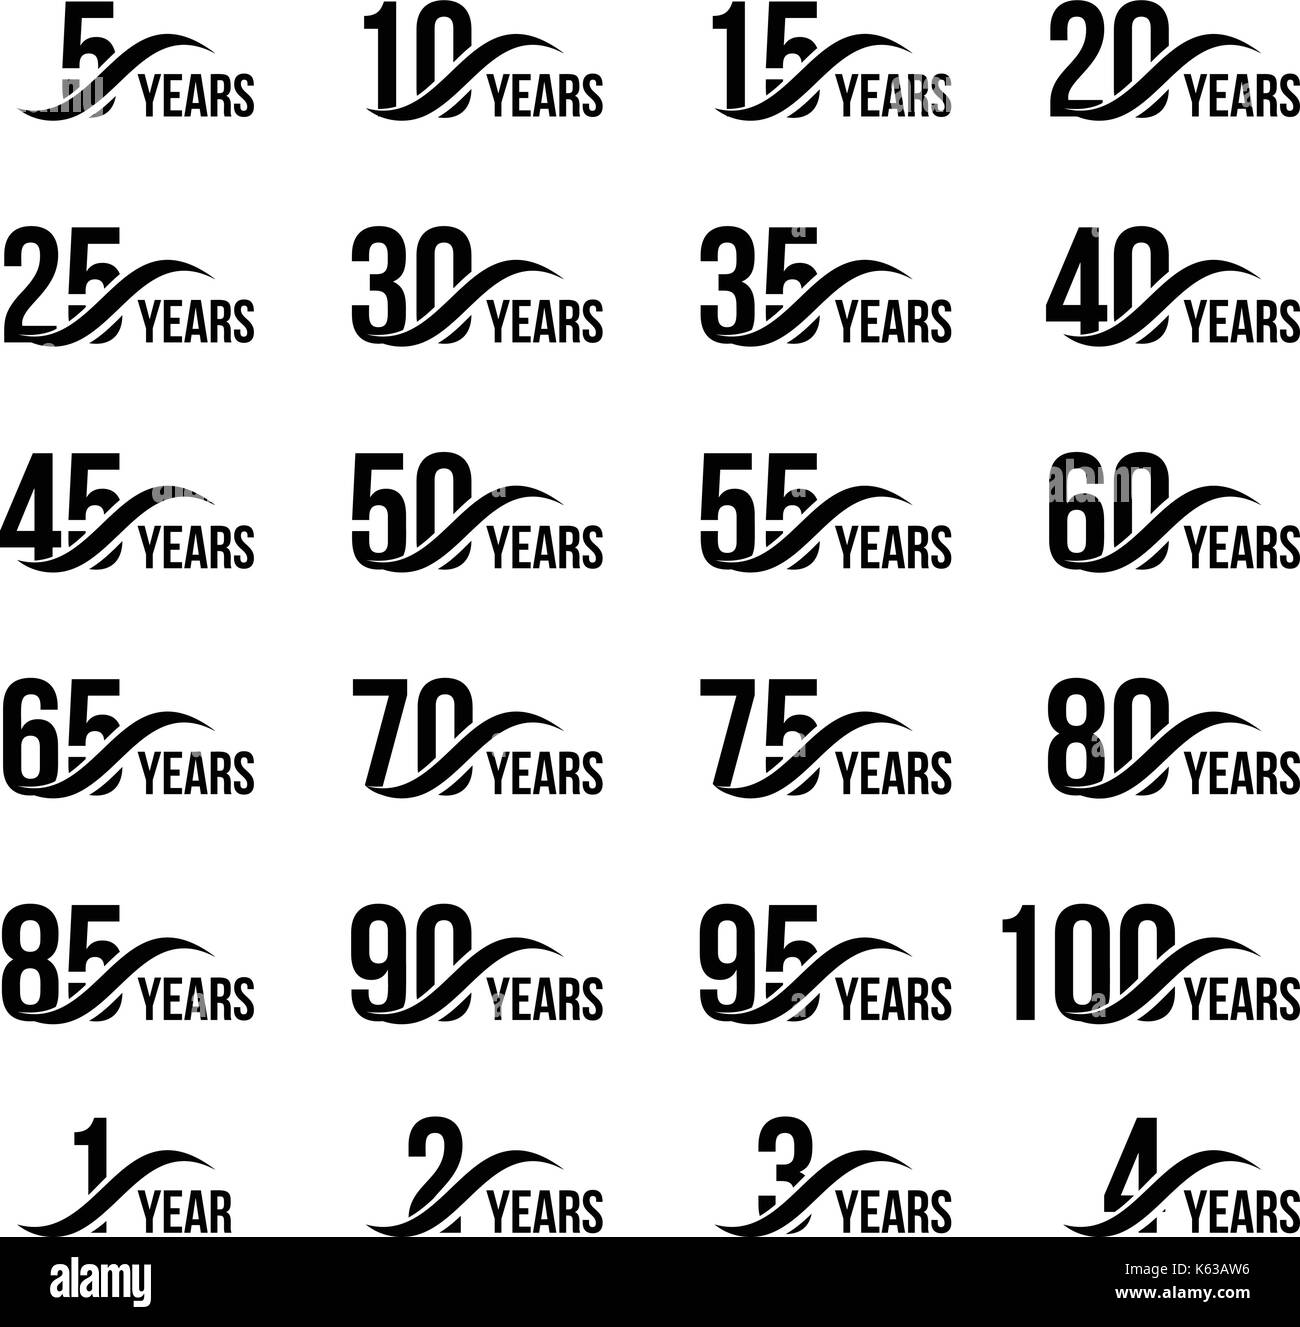 Isolato di colore nero con numeri di parola anni raccolta di icone su sfondo bianco, compleanno anniversario biglietto di auguri elementi di illustrazione vettoriale Illustrazione Vettoriale